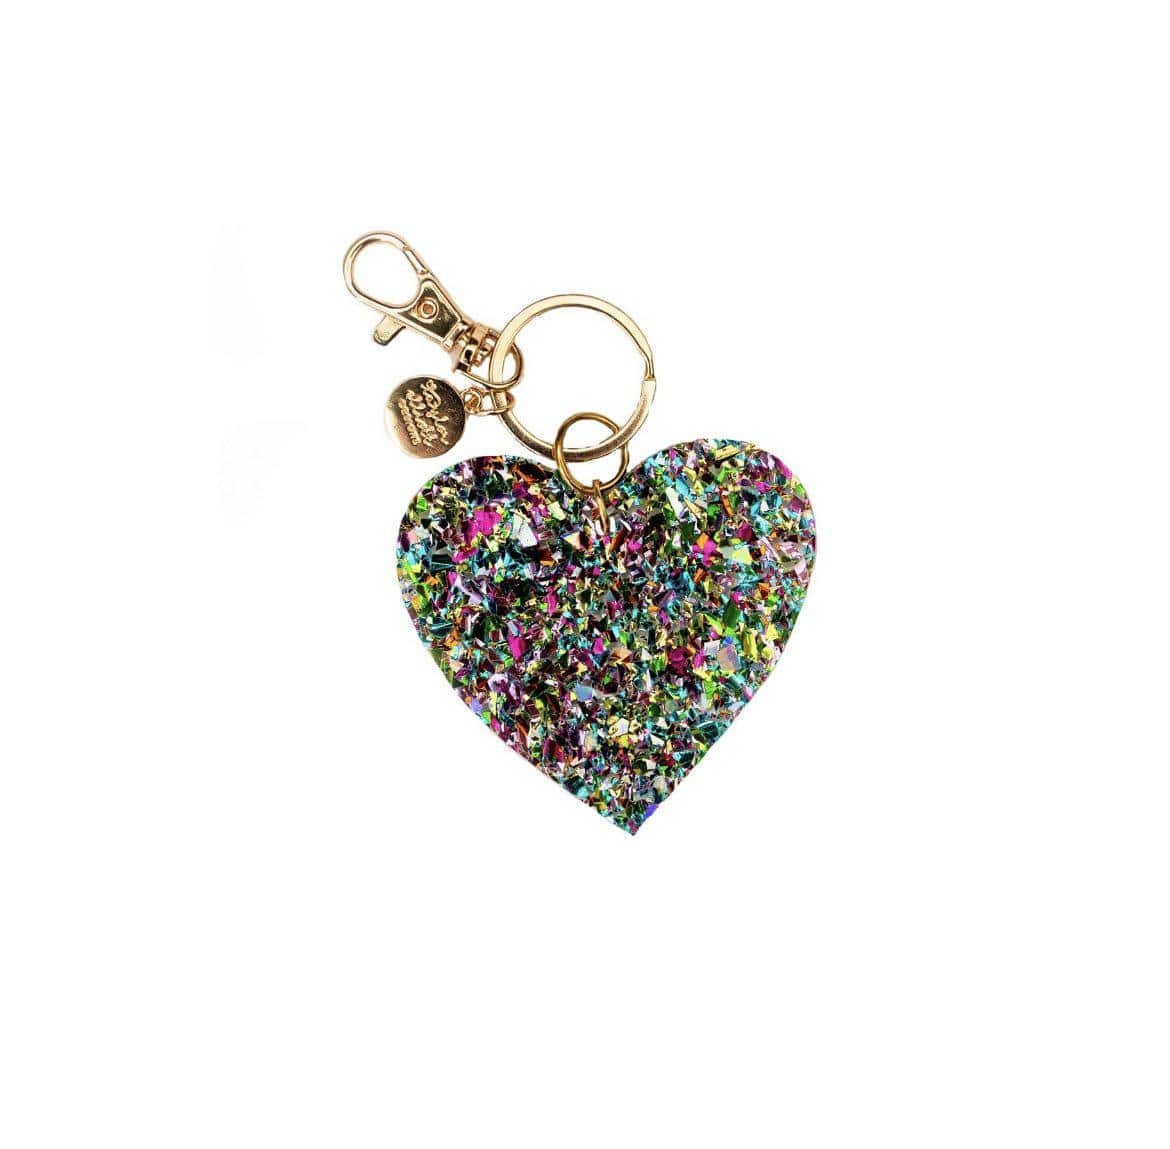 Confetti Acrylic Heart Keychain & Purse Clip - Twinkle Twinkle Little One